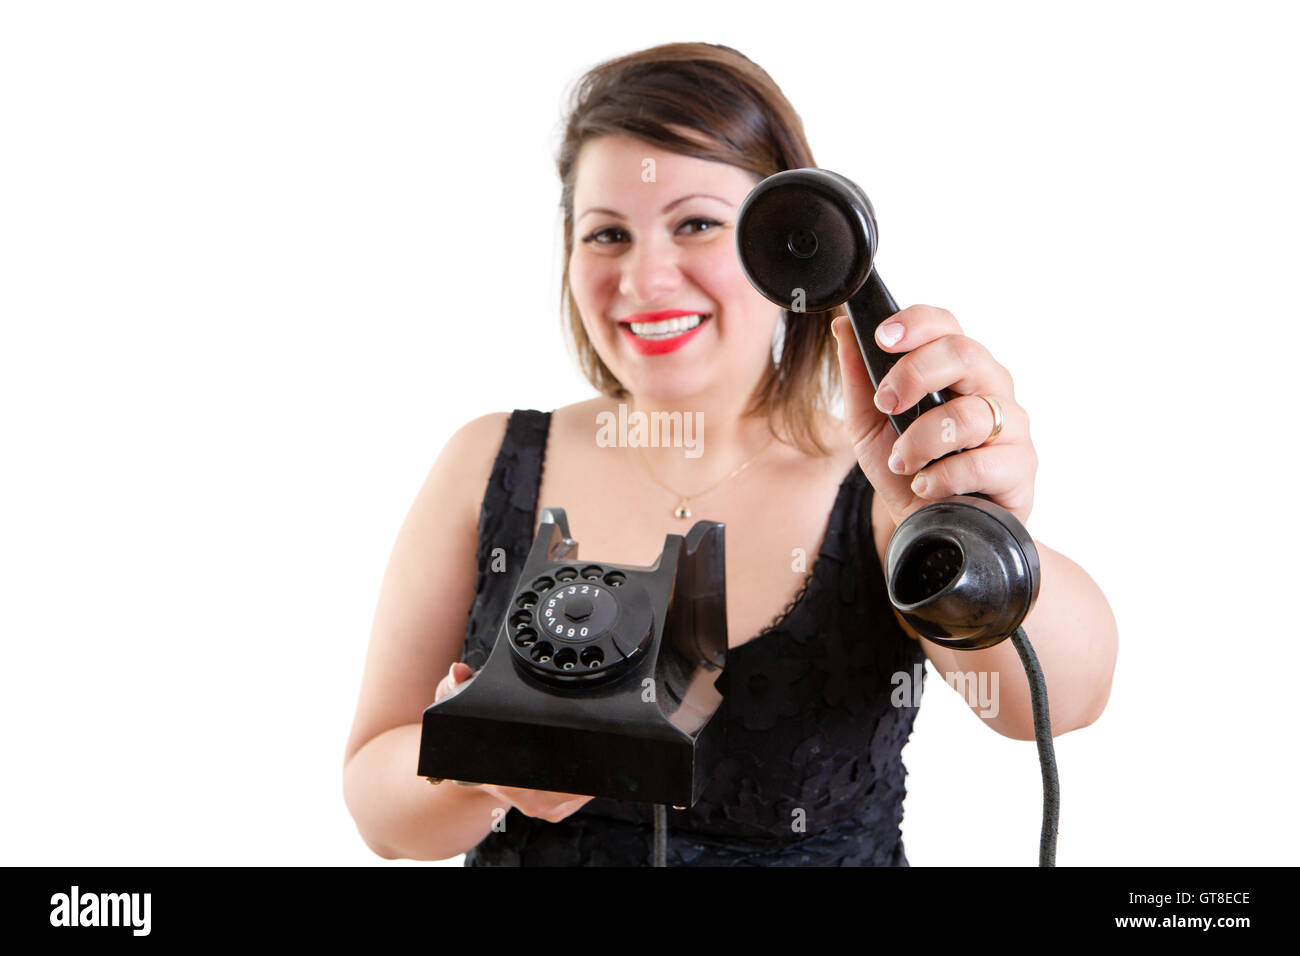 Sonriente, amable mujer atractiva la celebración de un antiguo teléfono de línea terrestre instrumento -una llamada para usted señor - Foto de stock